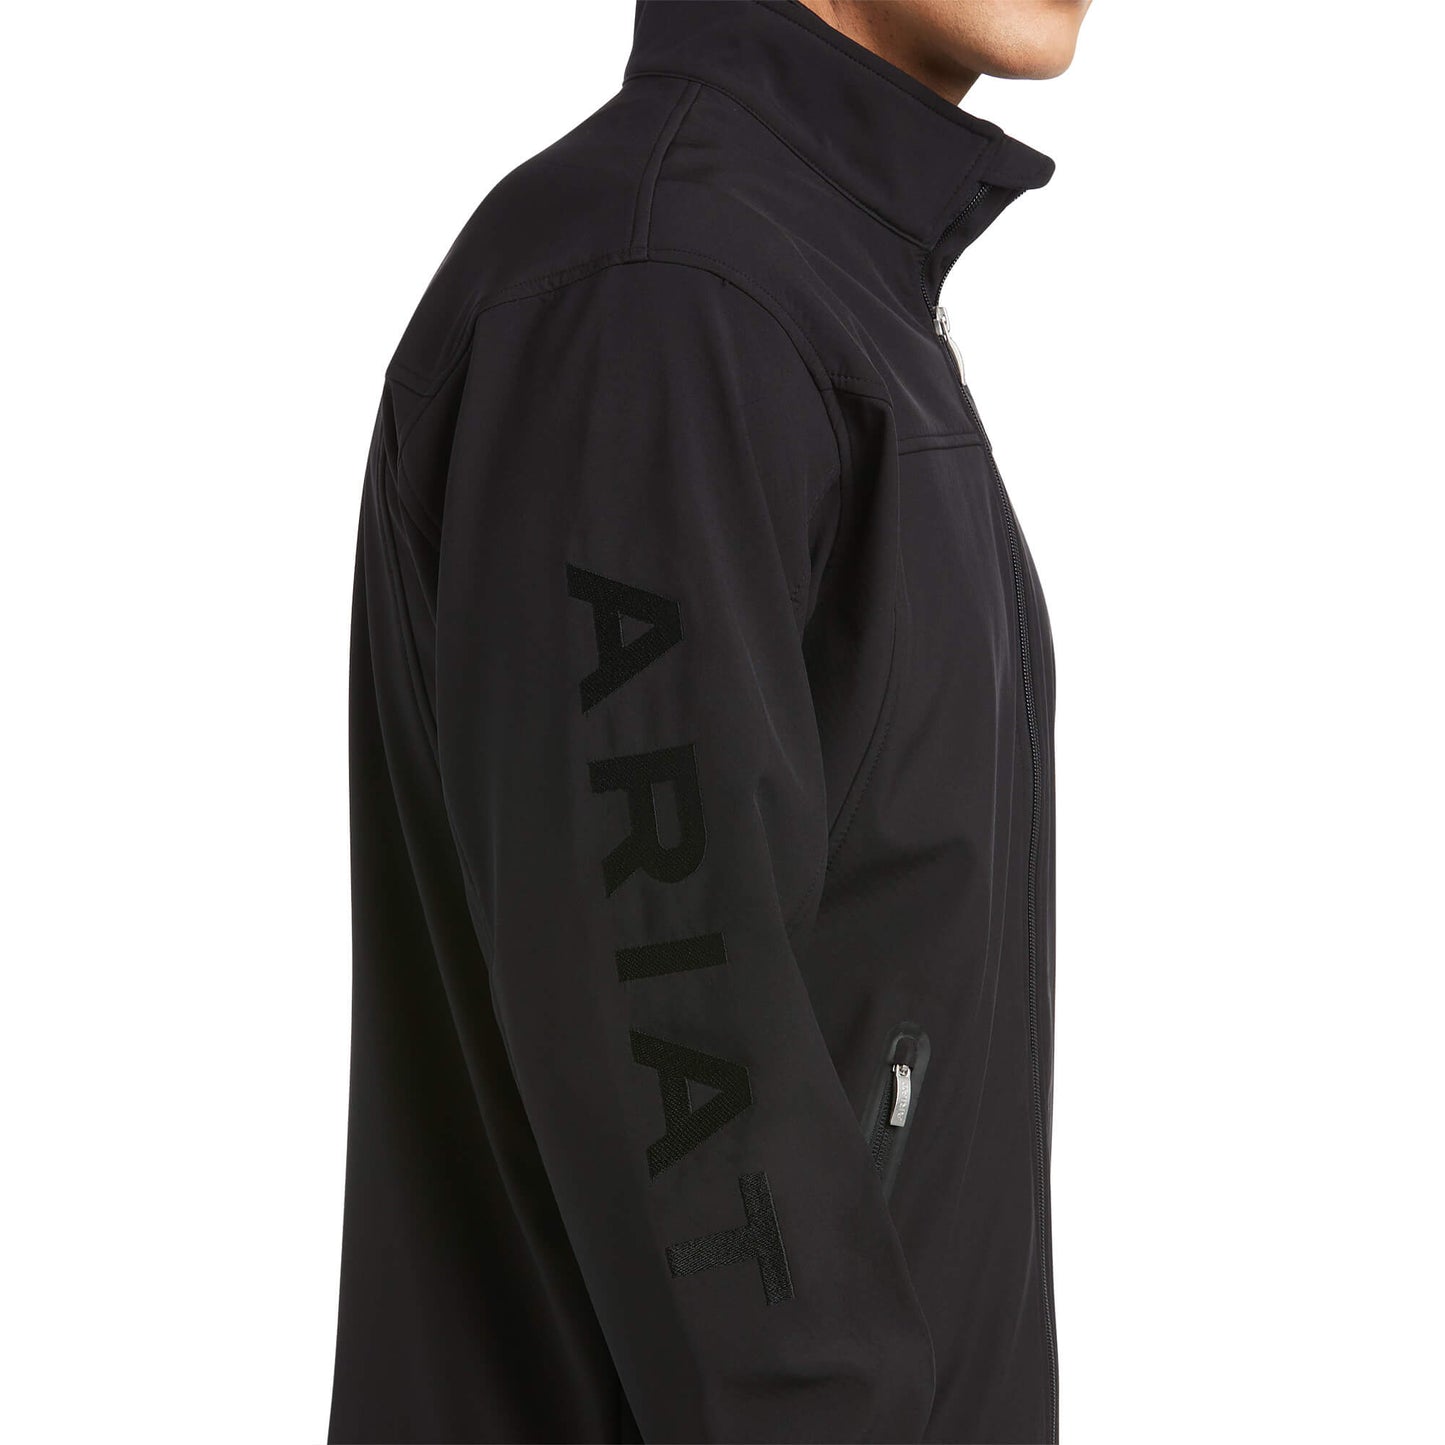 Ariat Men's New Team Black Softshell Jacket 10037399